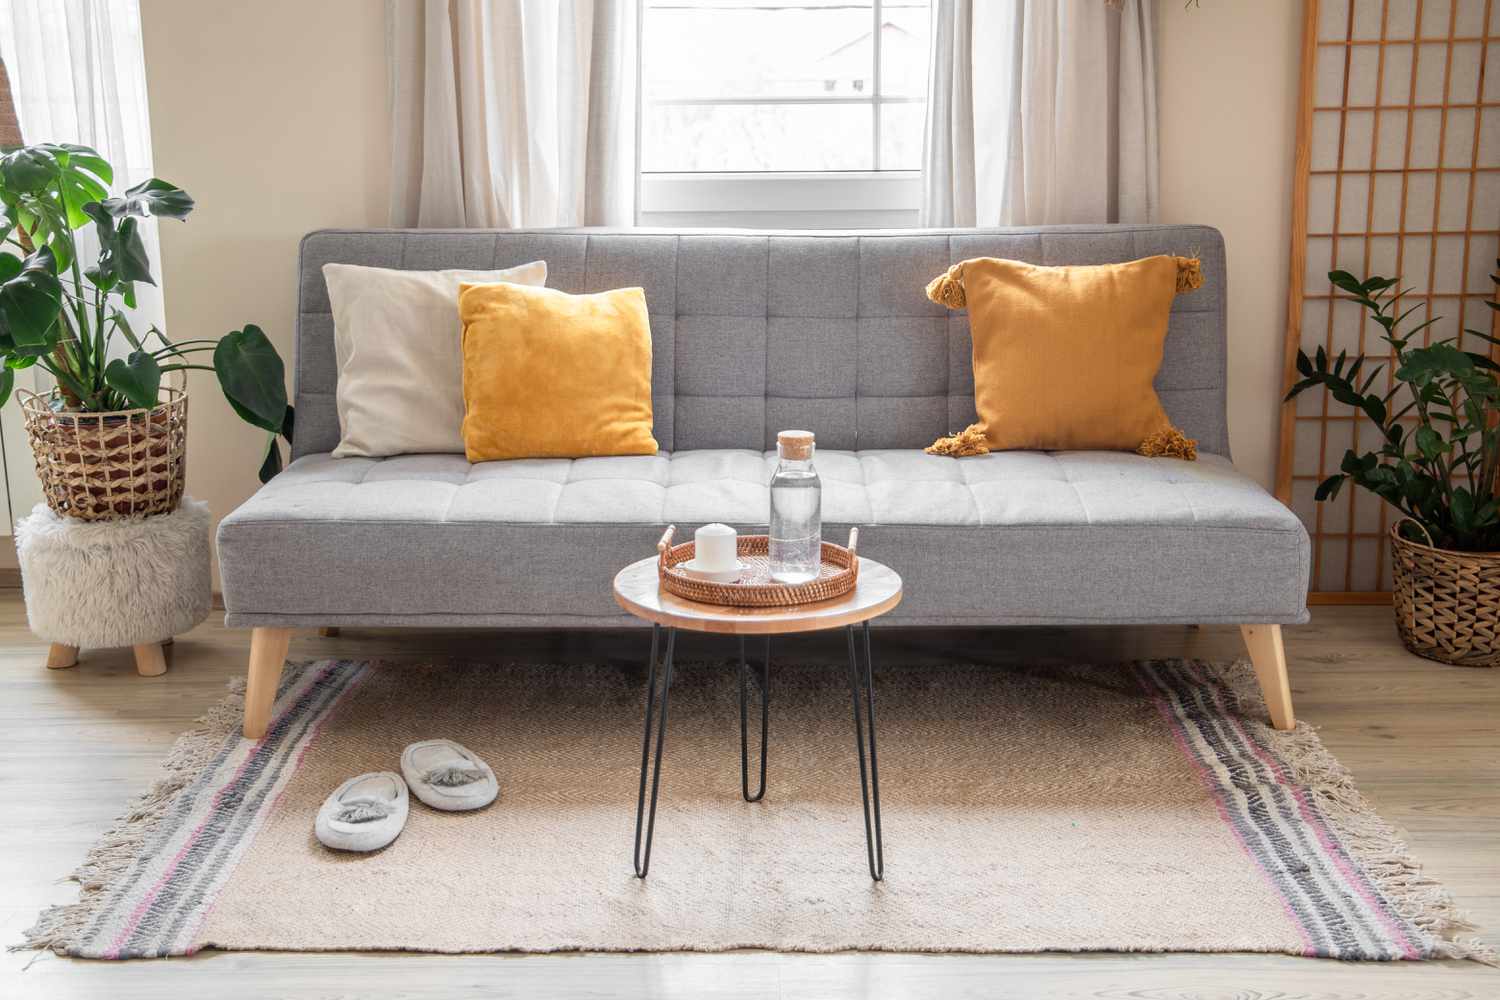 Sala de estar com sofá cinza sobre tapete de área com franjas bronzeadas